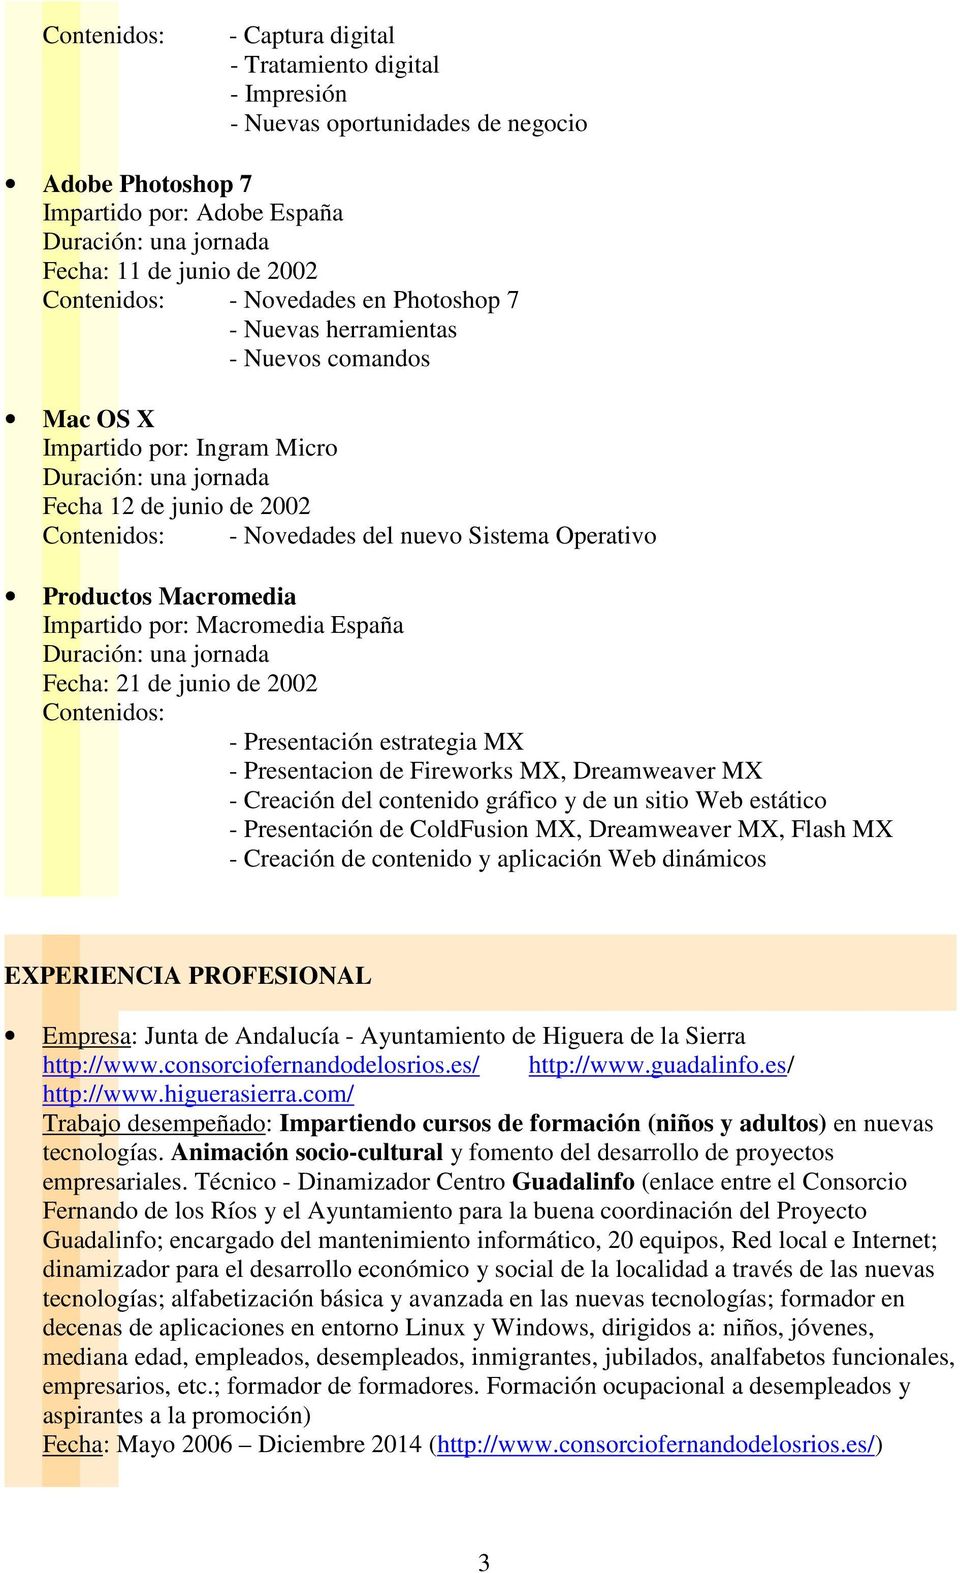 por: Macromedia España Fecha: 21 de junio de 2002 Contenidos: - Presentación estrategia MX - Presentacion de Fireworks MX, Dreamweaver MX - Creación del contenido gráfico y de un sitio Web estático -